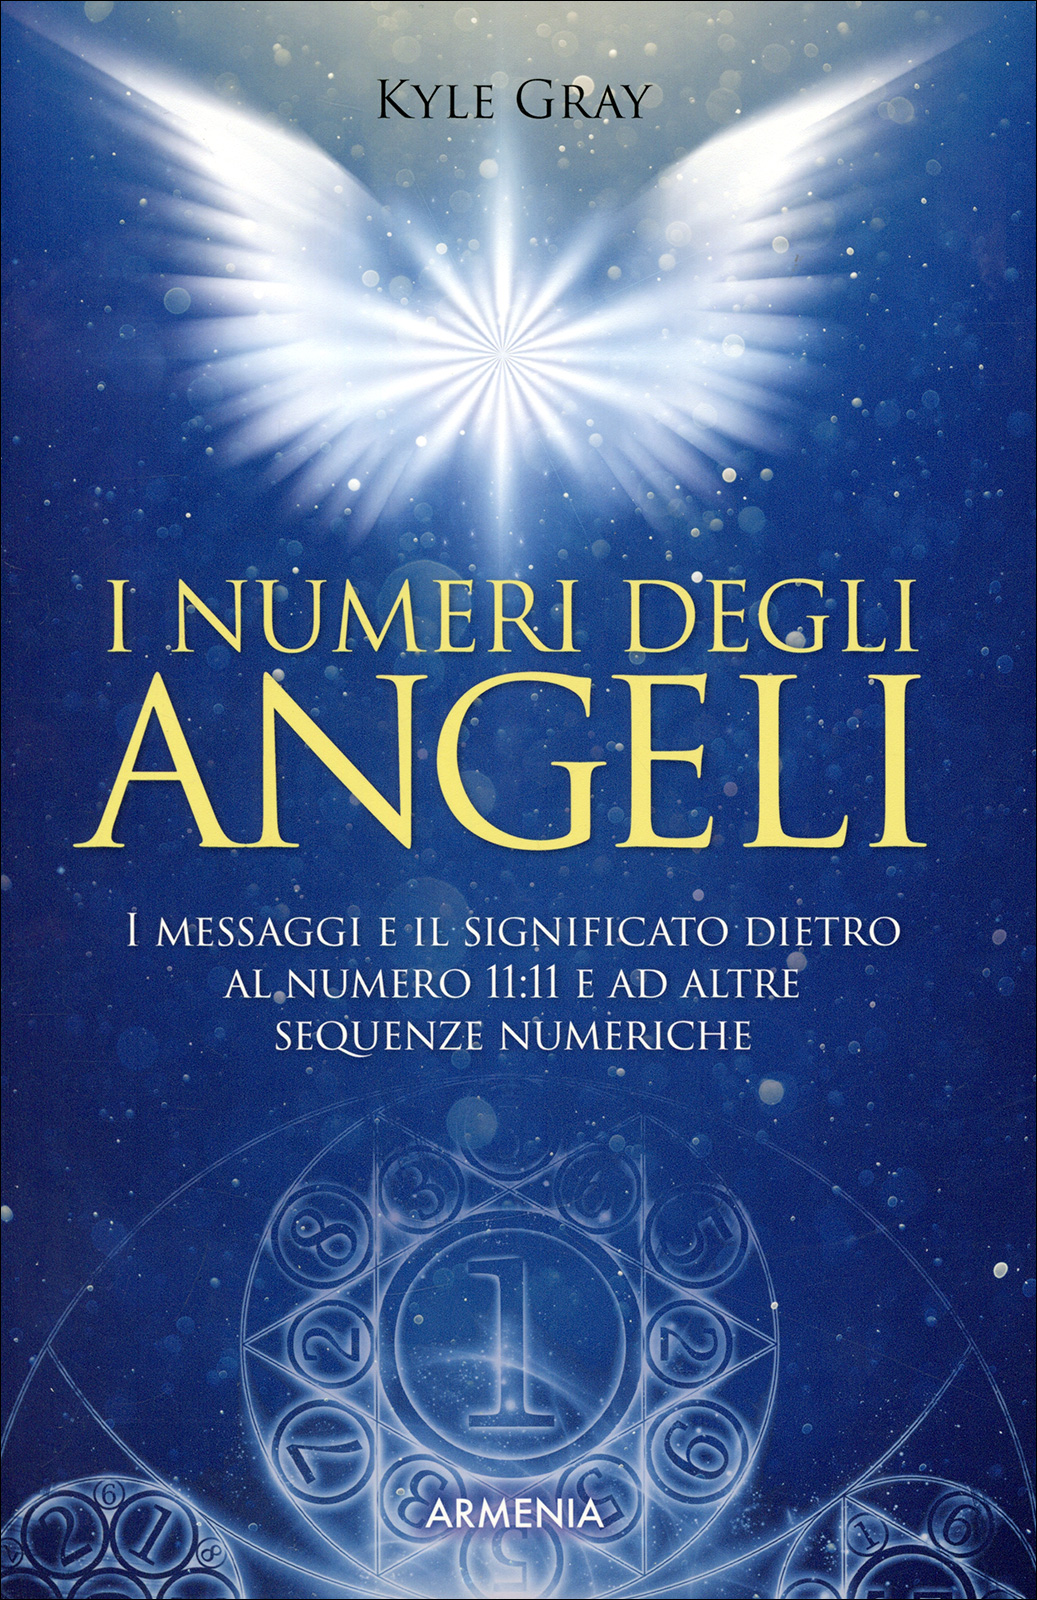 Podwójne liczby: anielskie znaczenie i numerologia